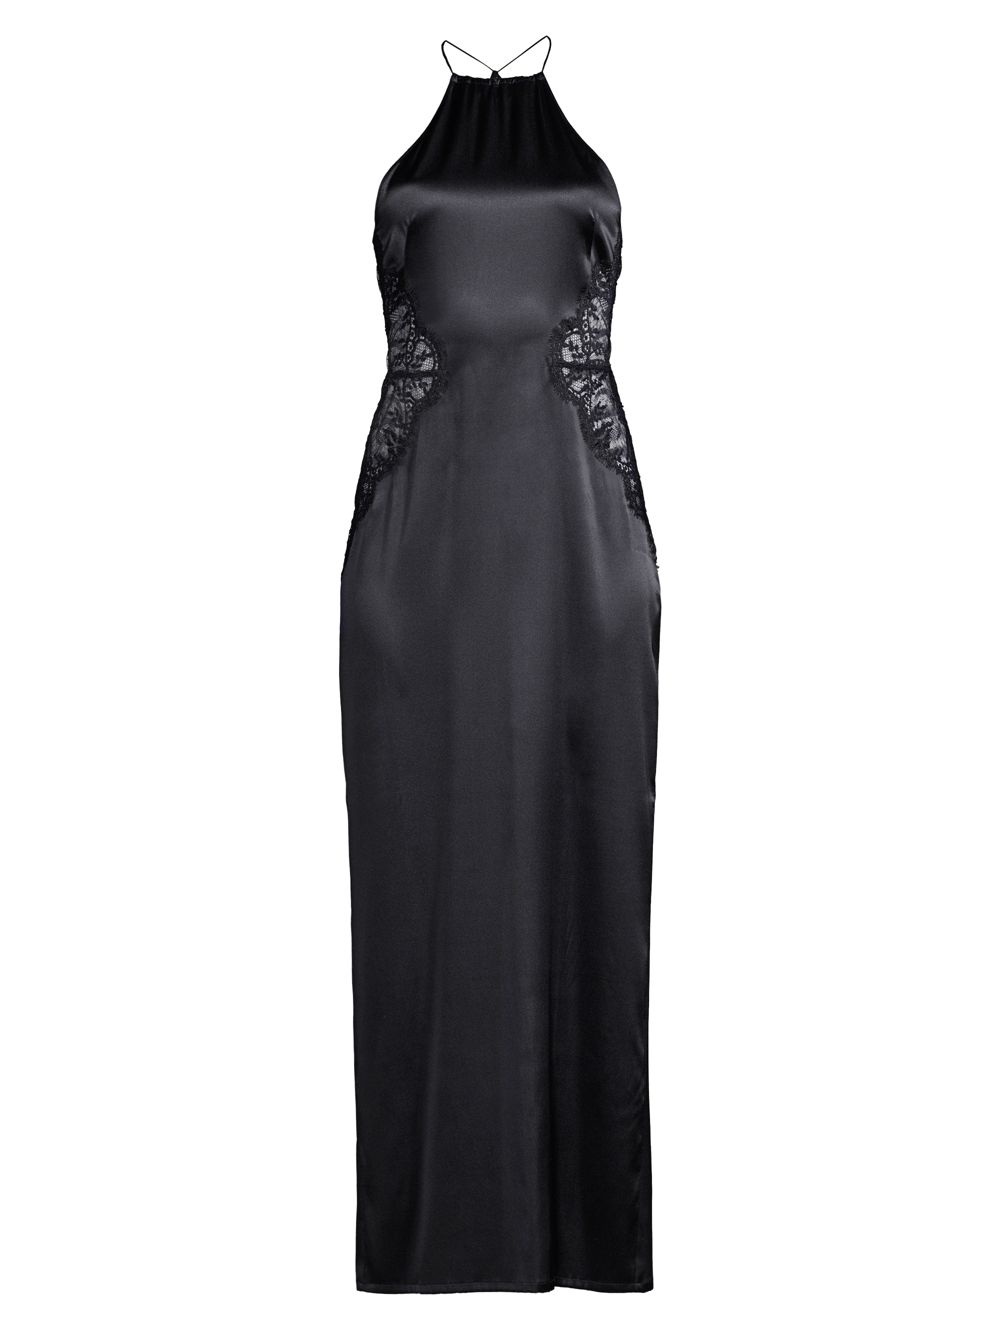 Ночное платье Exotique Silk Halter с кружевной отделкой La Perla, черный